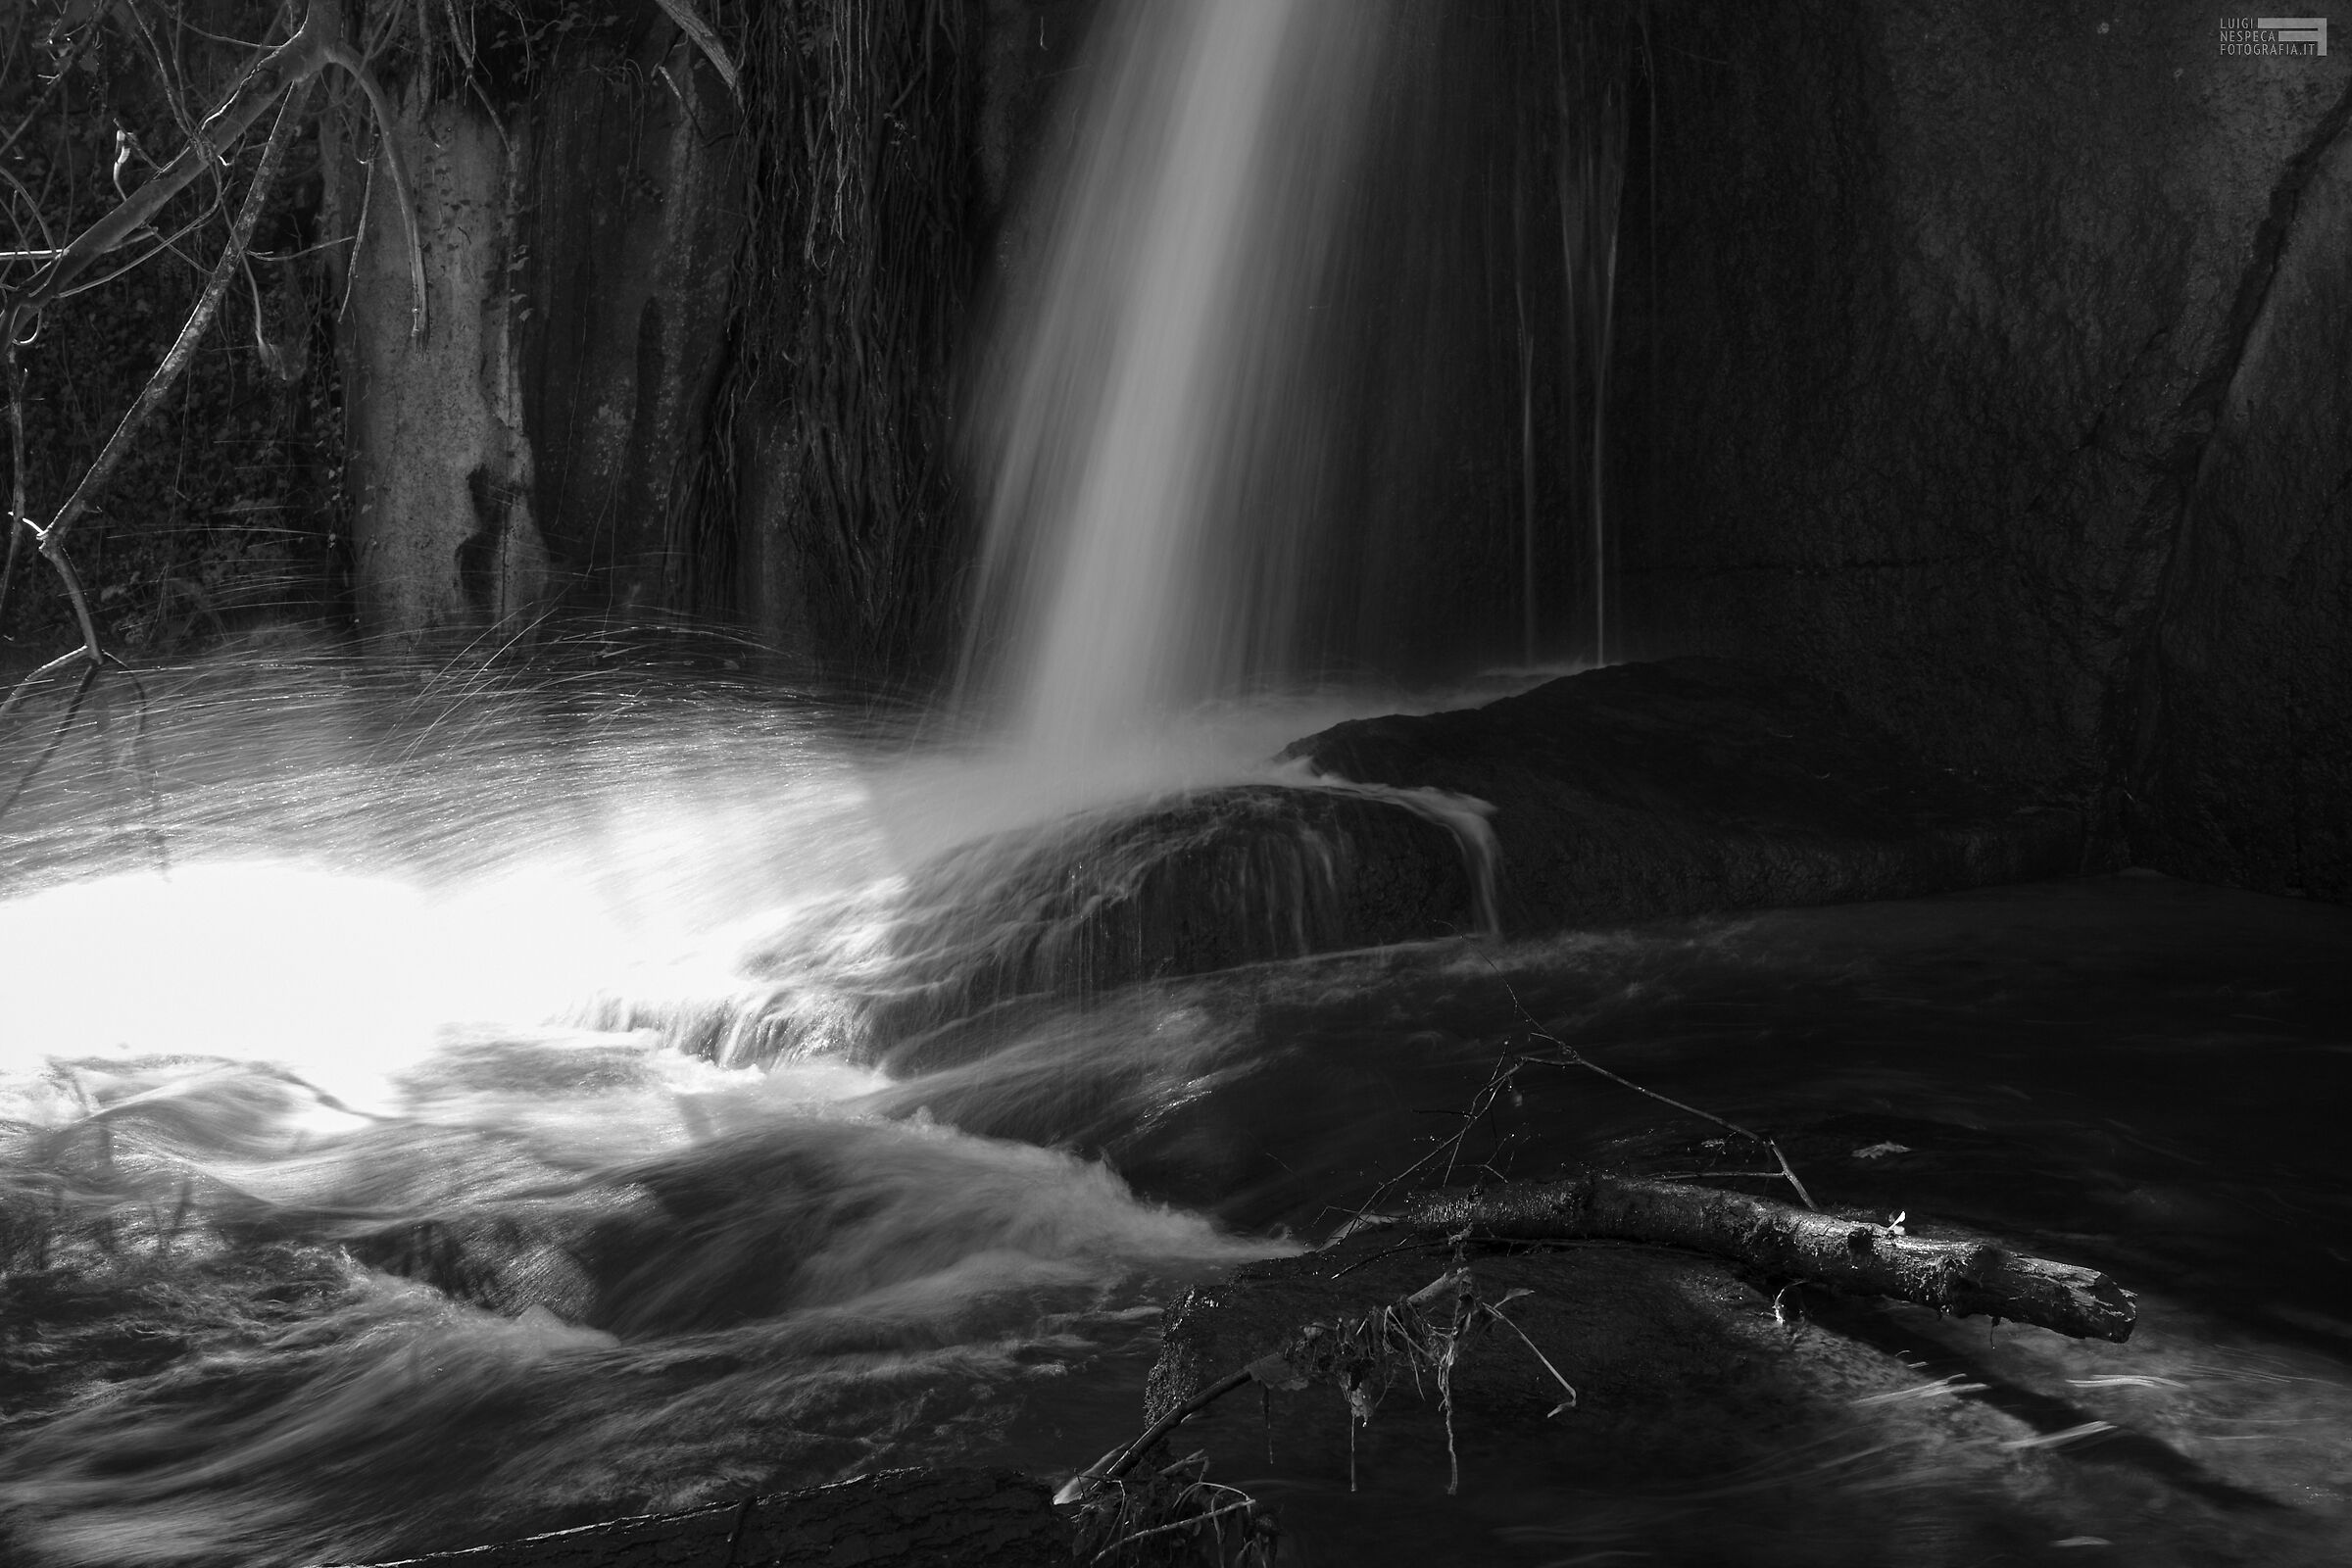 Monte Gelato waterfalls / monochrome...